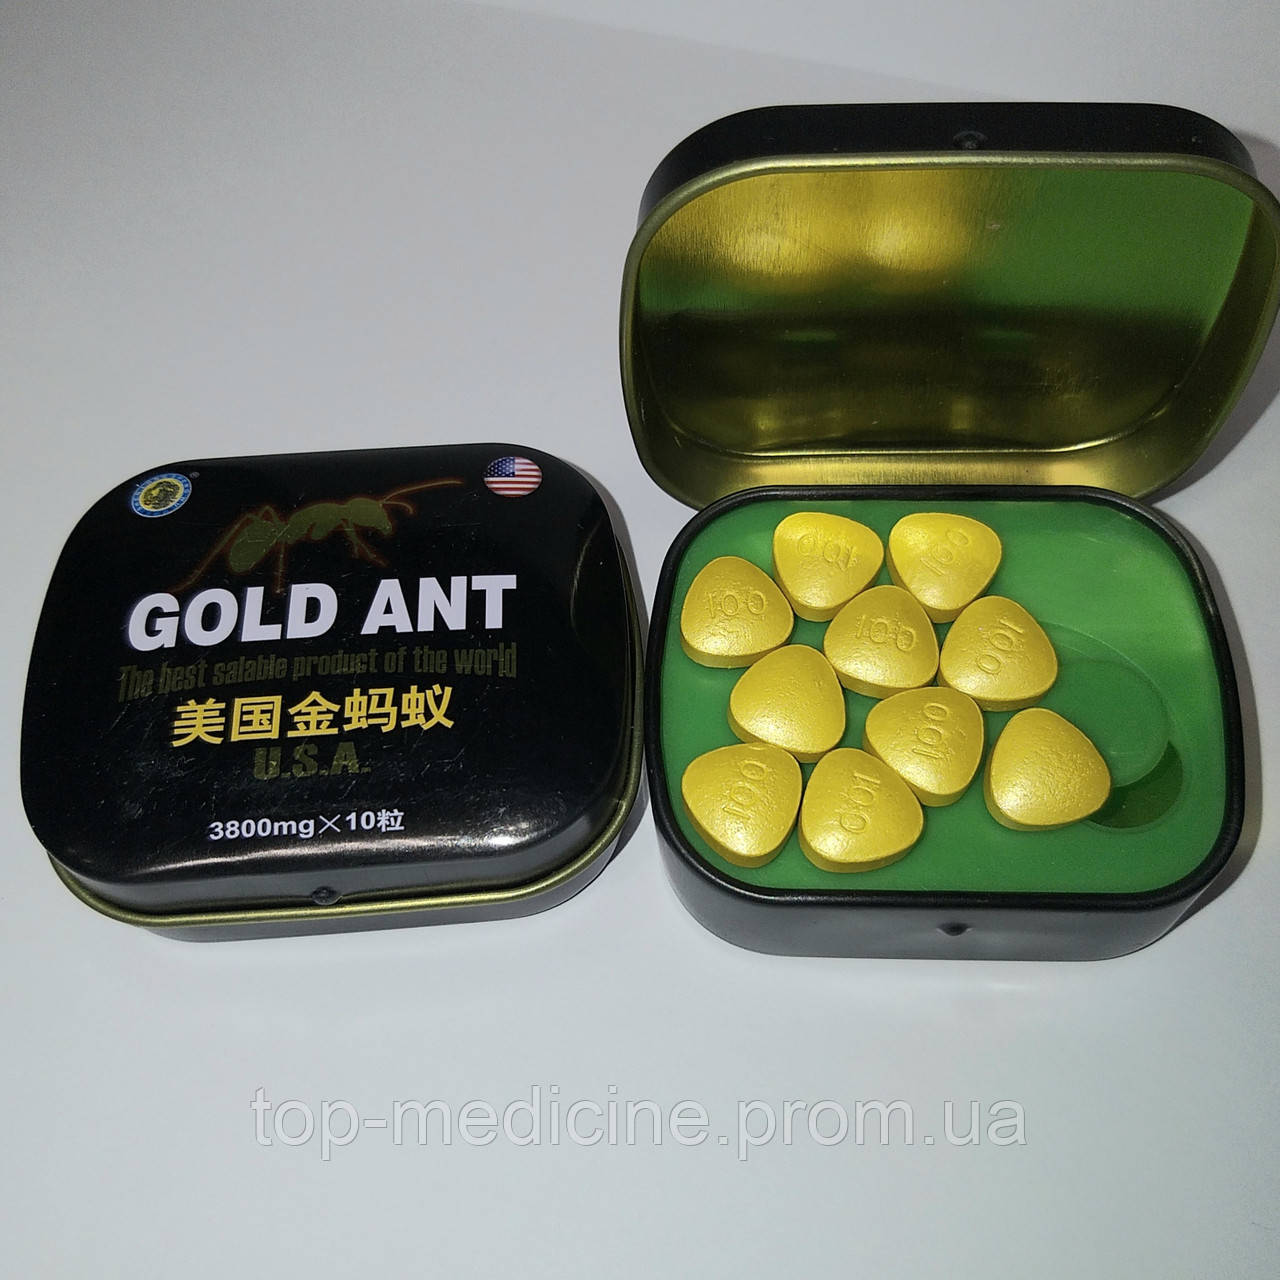 Золотий Муравей, Голд-Ант, Gold Ant — для потенції.10 табл в уп.